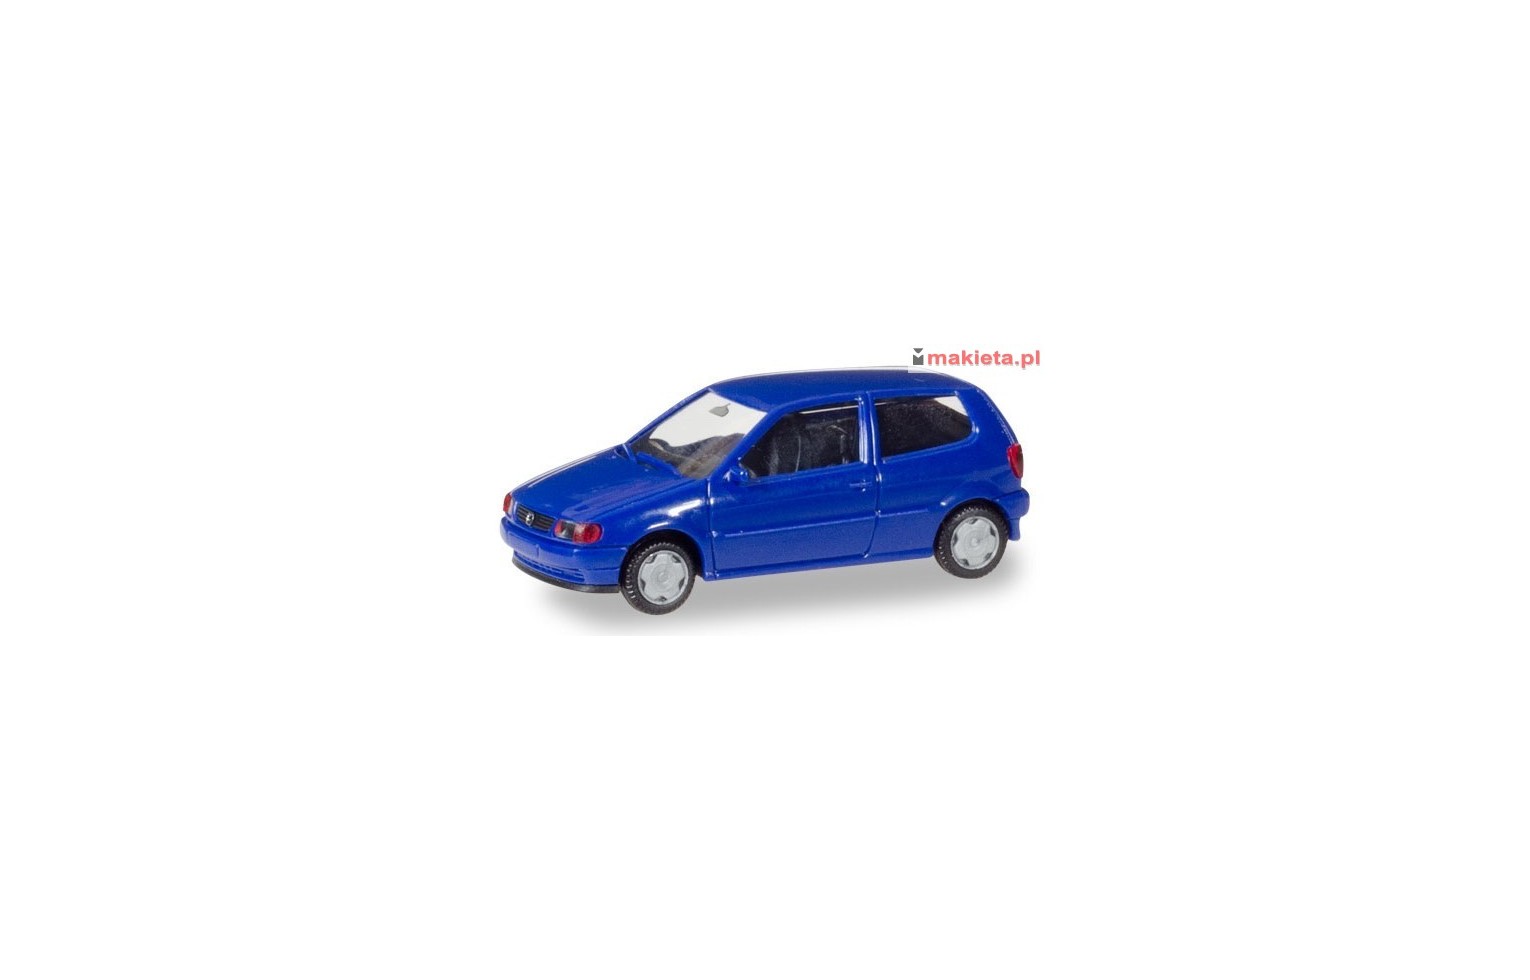 Herpa 012140 -005, VW Polo, MiniKit, skala H0